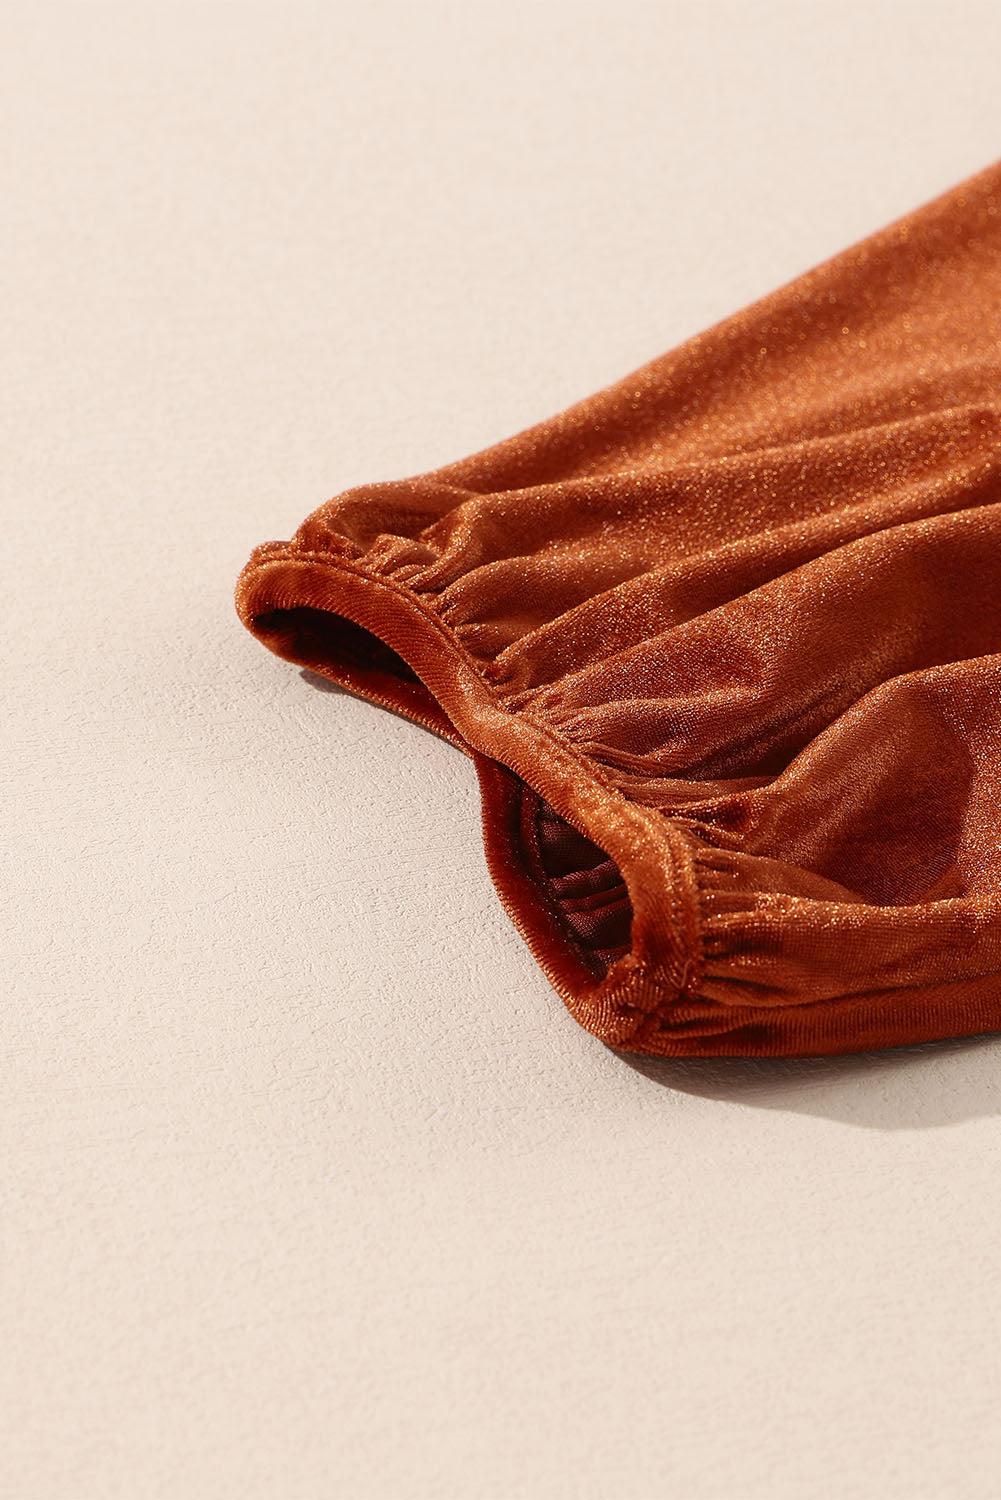 Camicia in velluto babydoll a tunica con maniche a 3/4 color kaki pallido